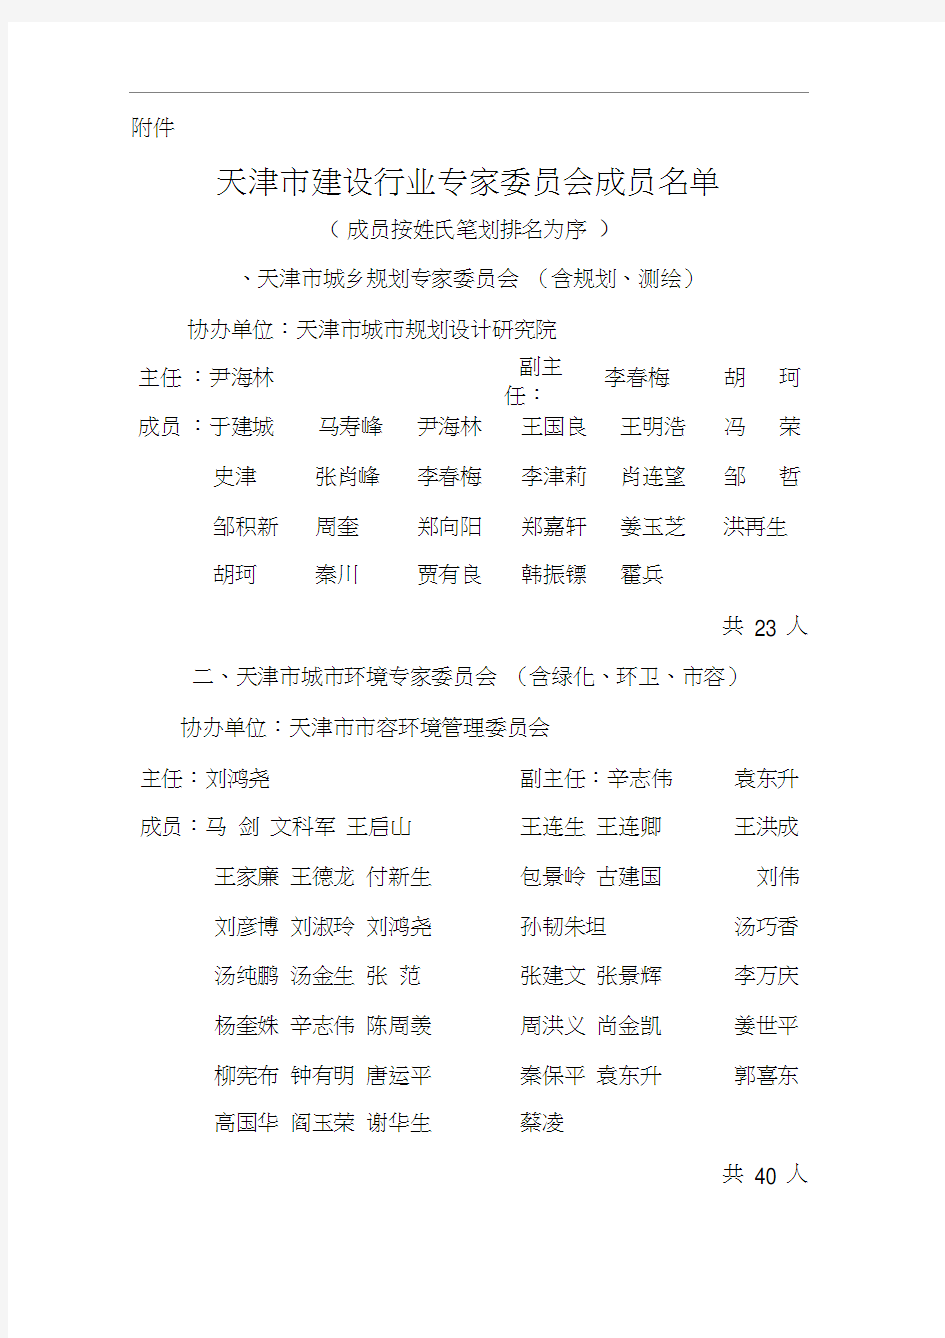 天津市建设行业专家委员会成员名单